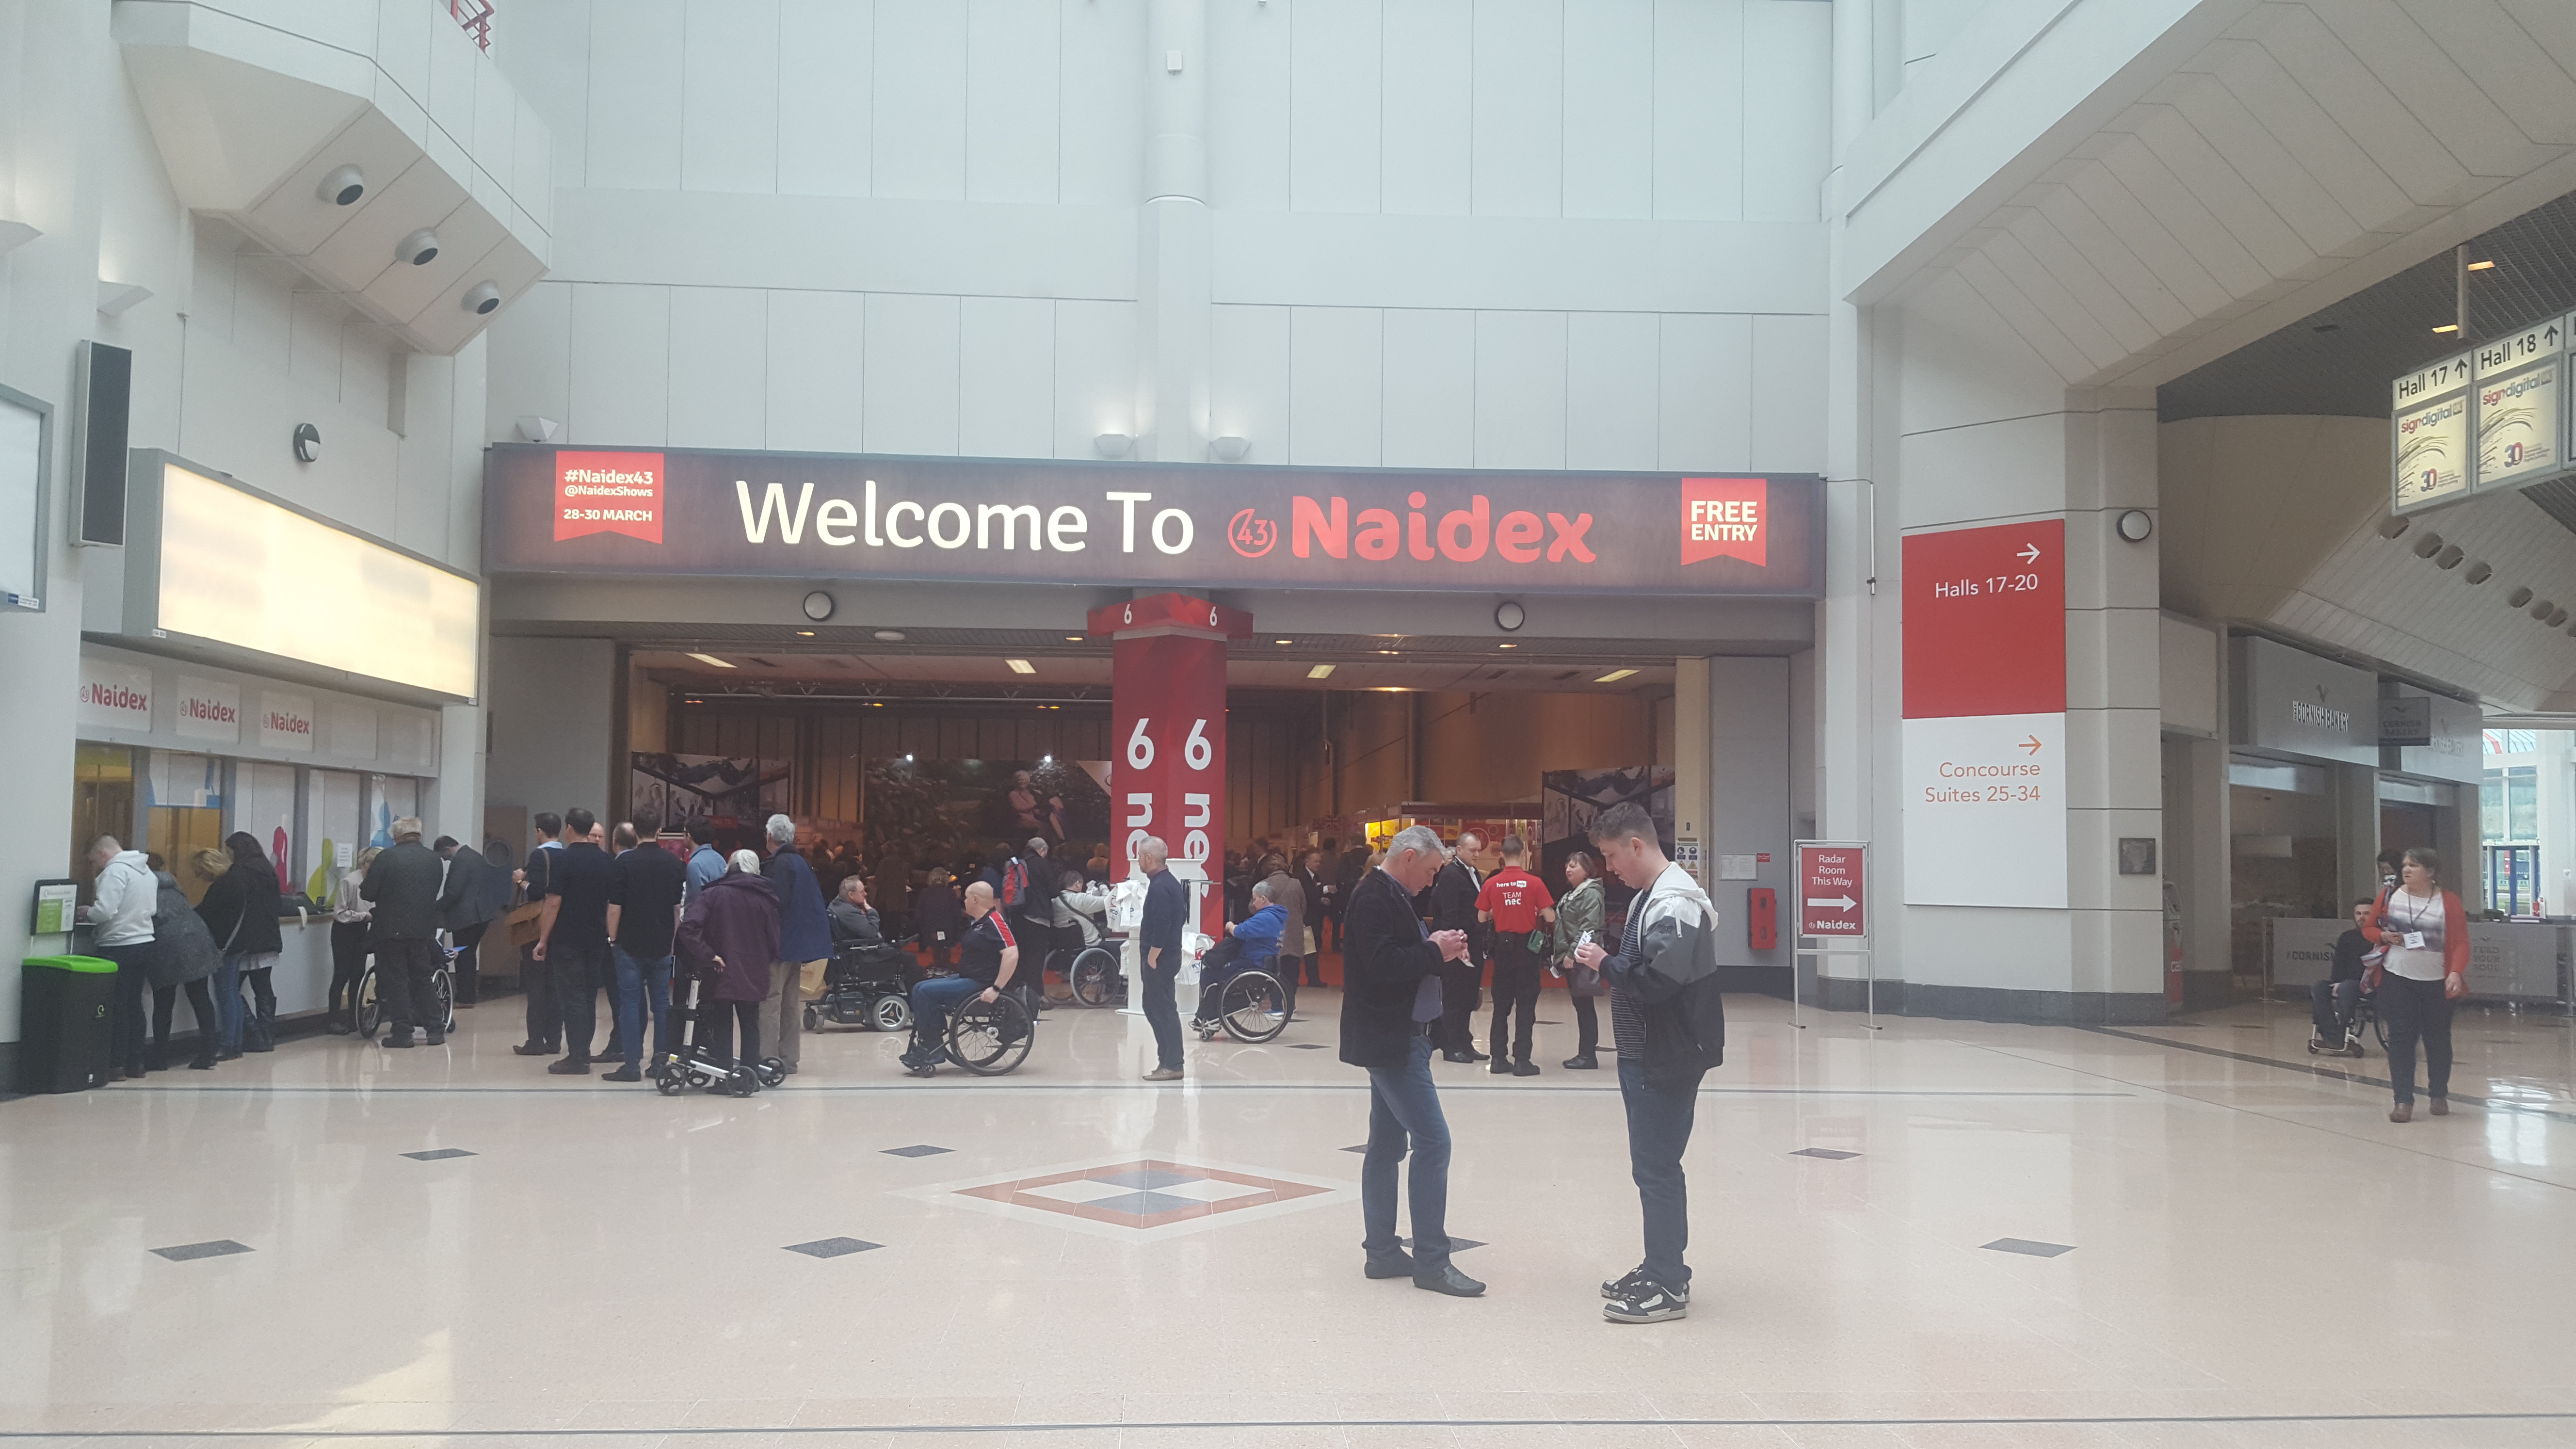 Naidex show at the NEC